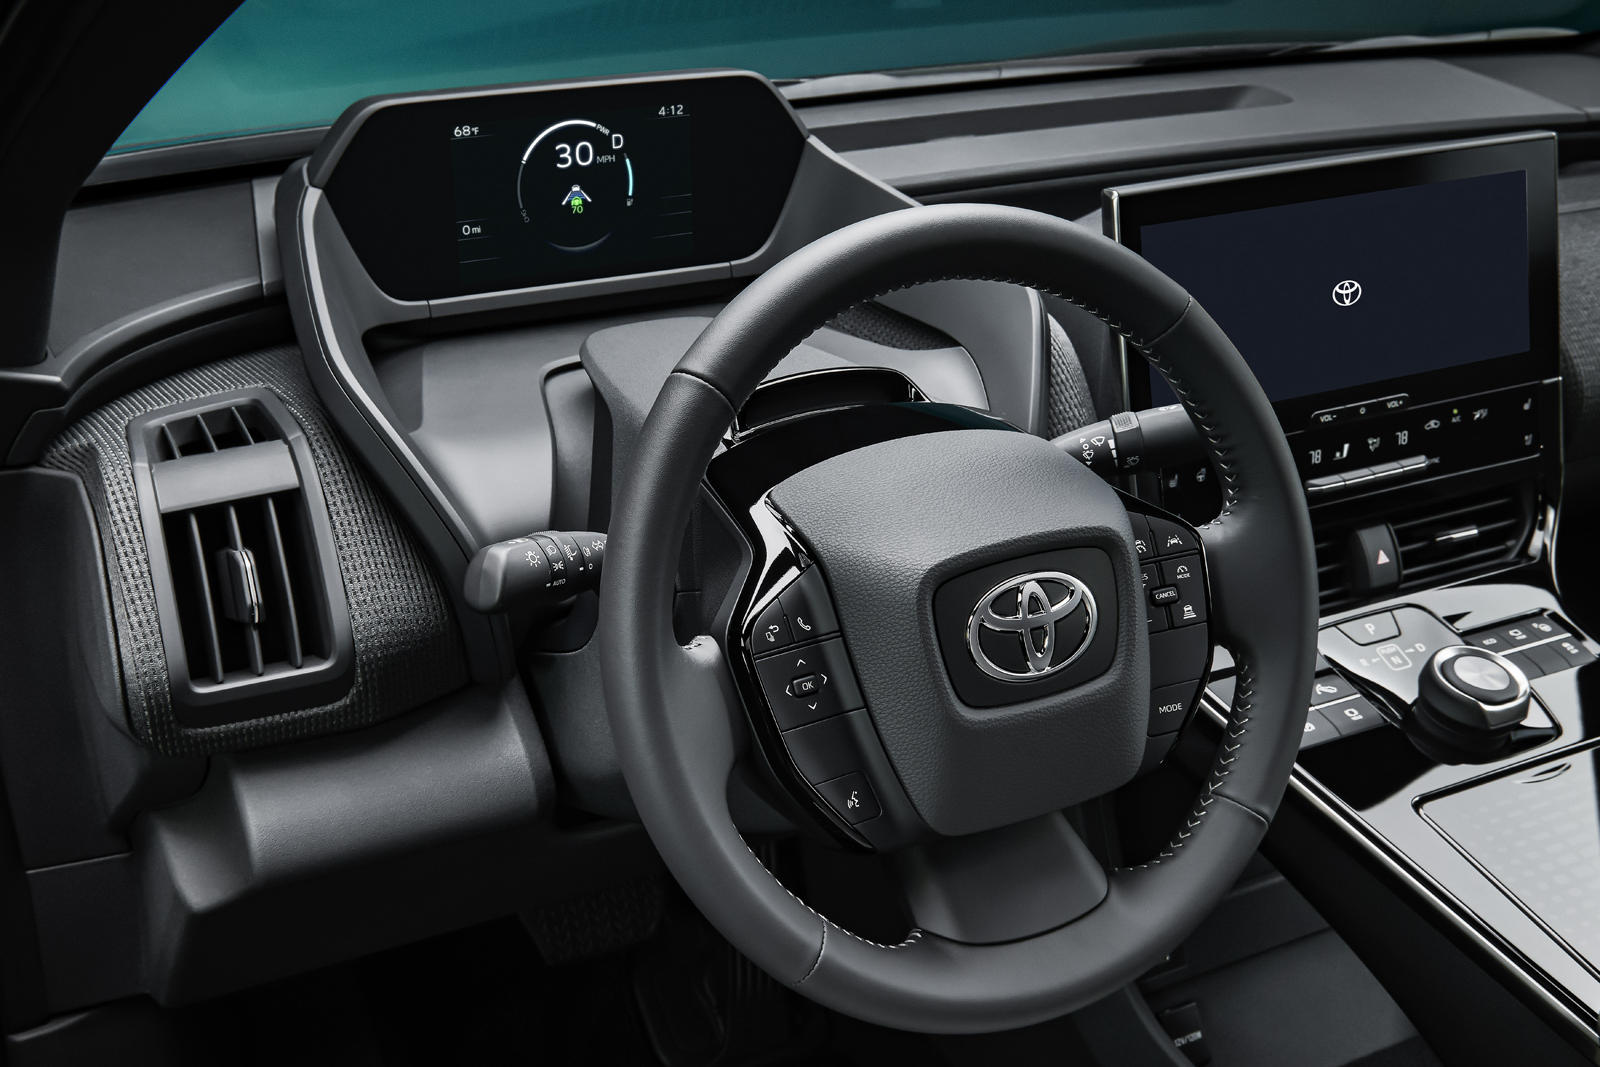 Следующий большой скачок Toyota в области широкомасштабной электрификации автомобилей начался. Представляем концепт Toyota bZ4X, полностью электрический внедорожник с аккумулятором, который является первым из новой линейки BEV под новым брендом «bZ» 